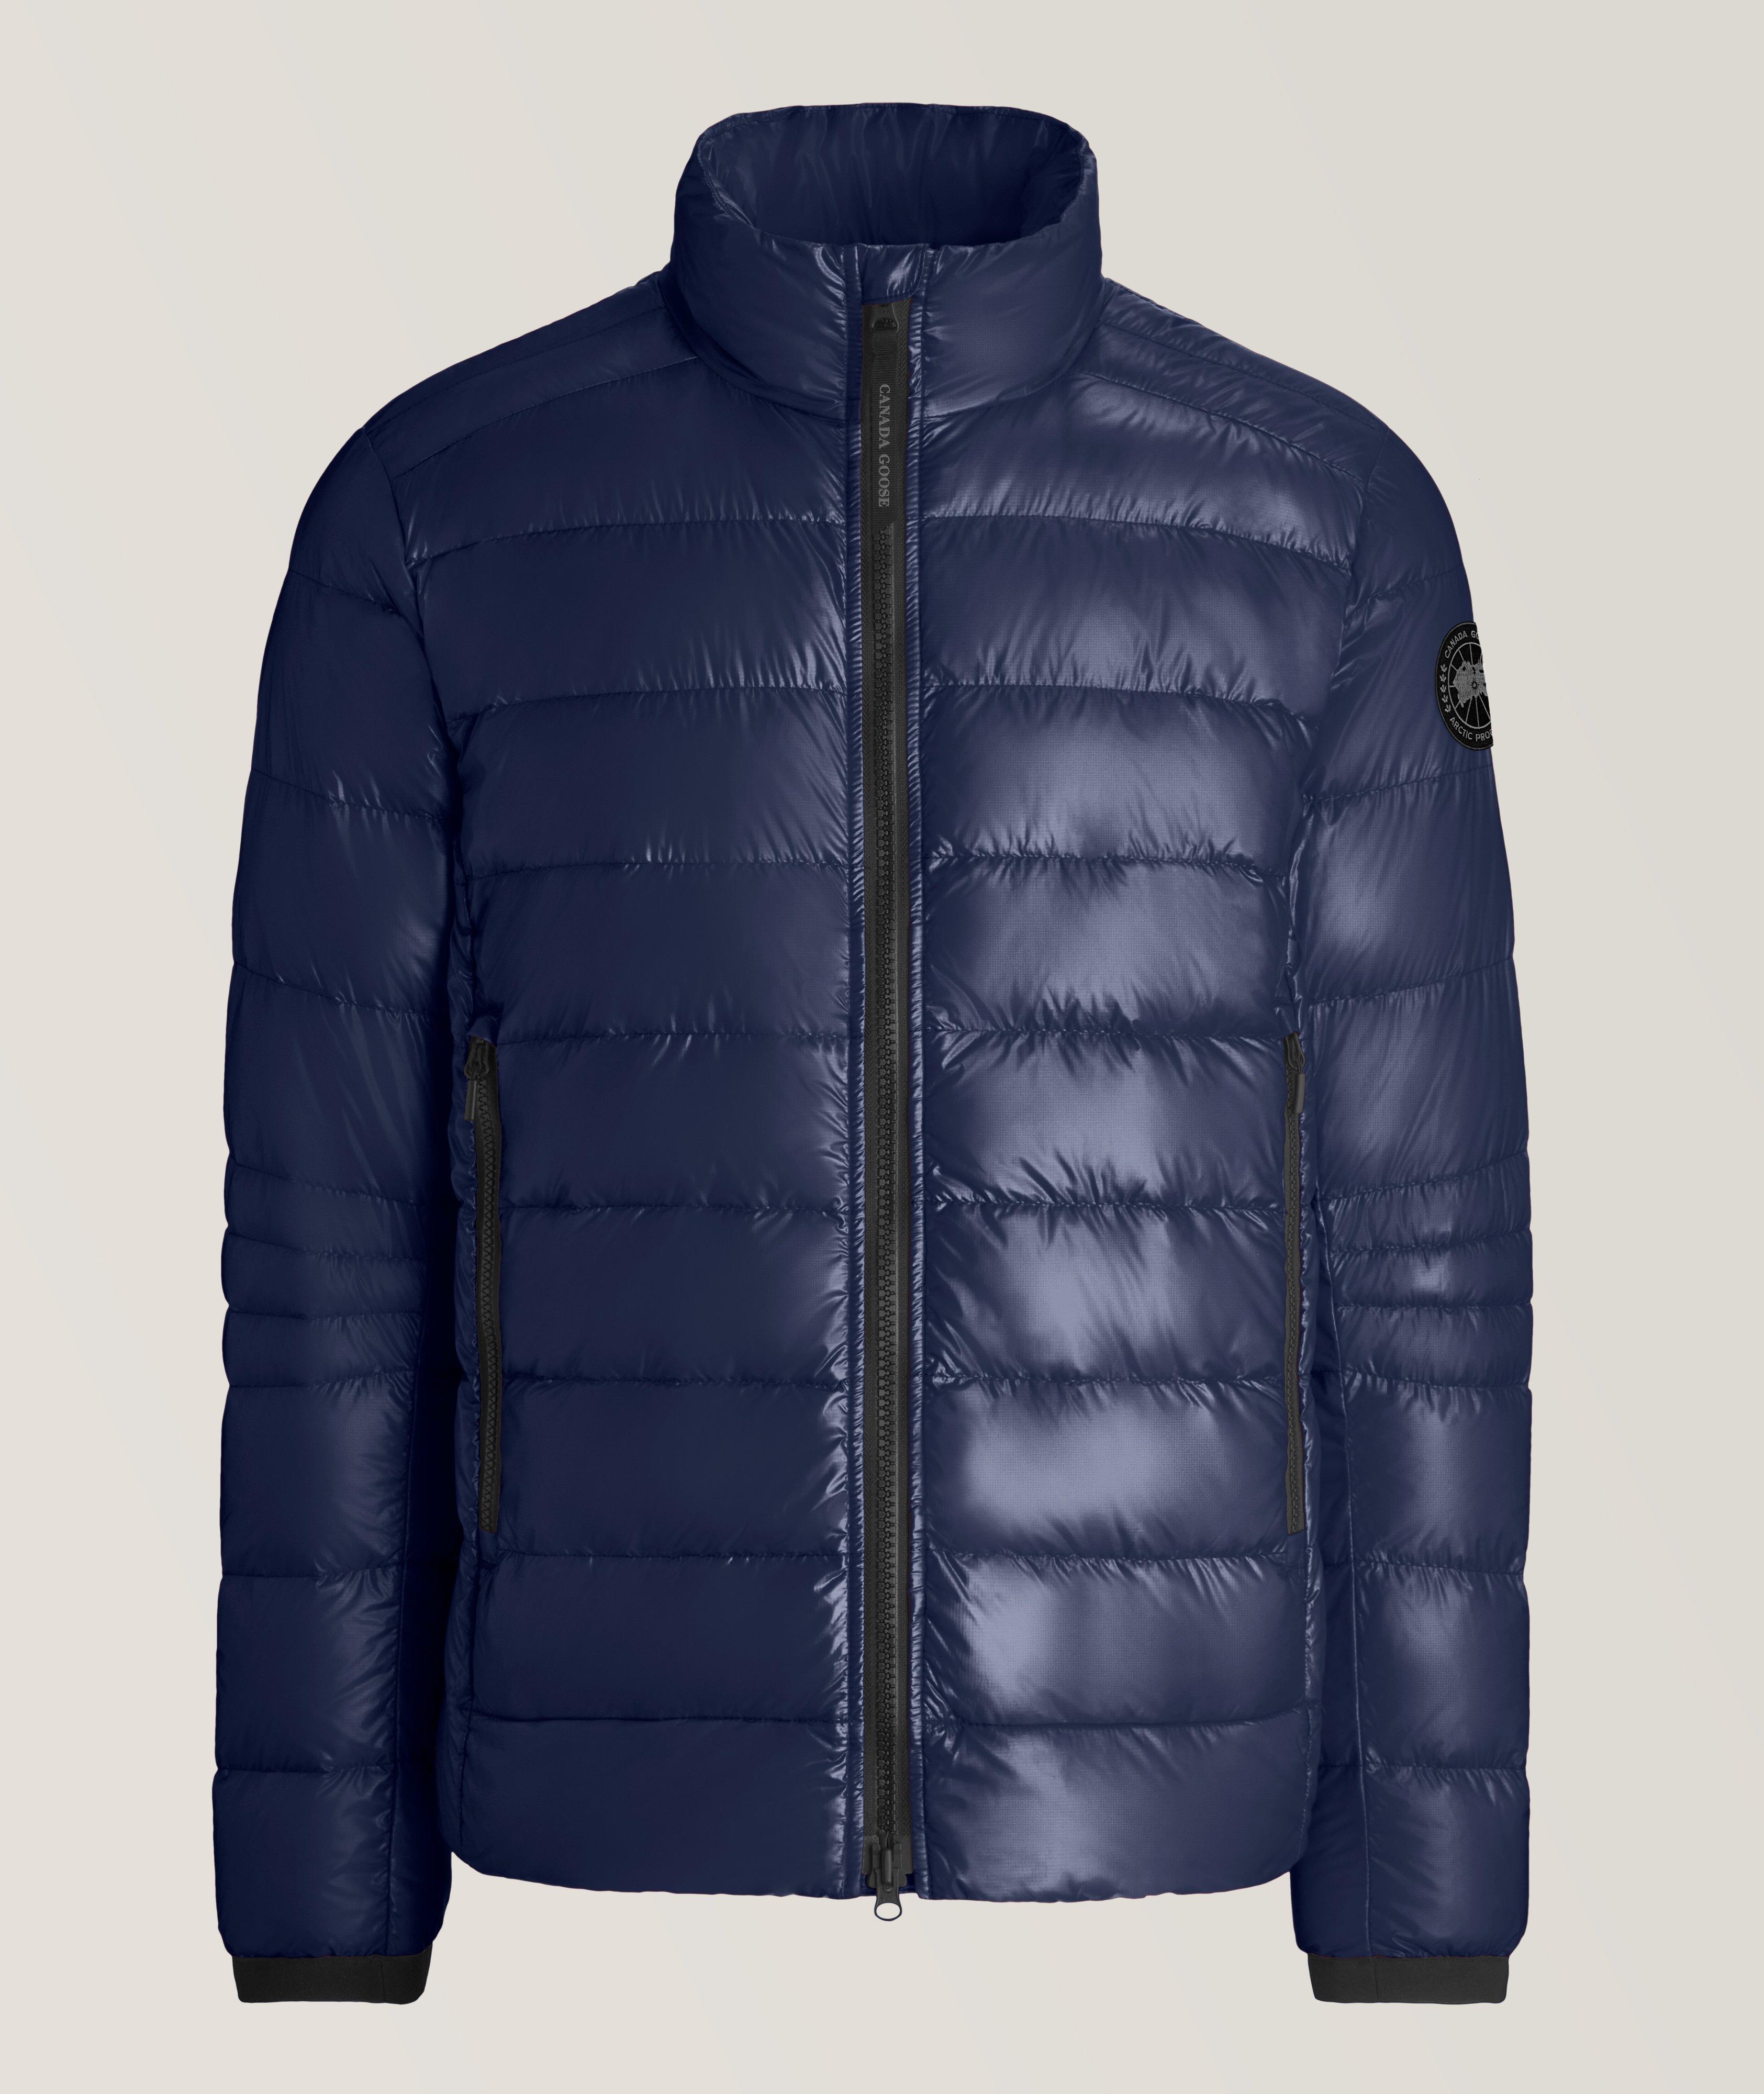 Manteau de duvet Crofton, collection Black Label image 0